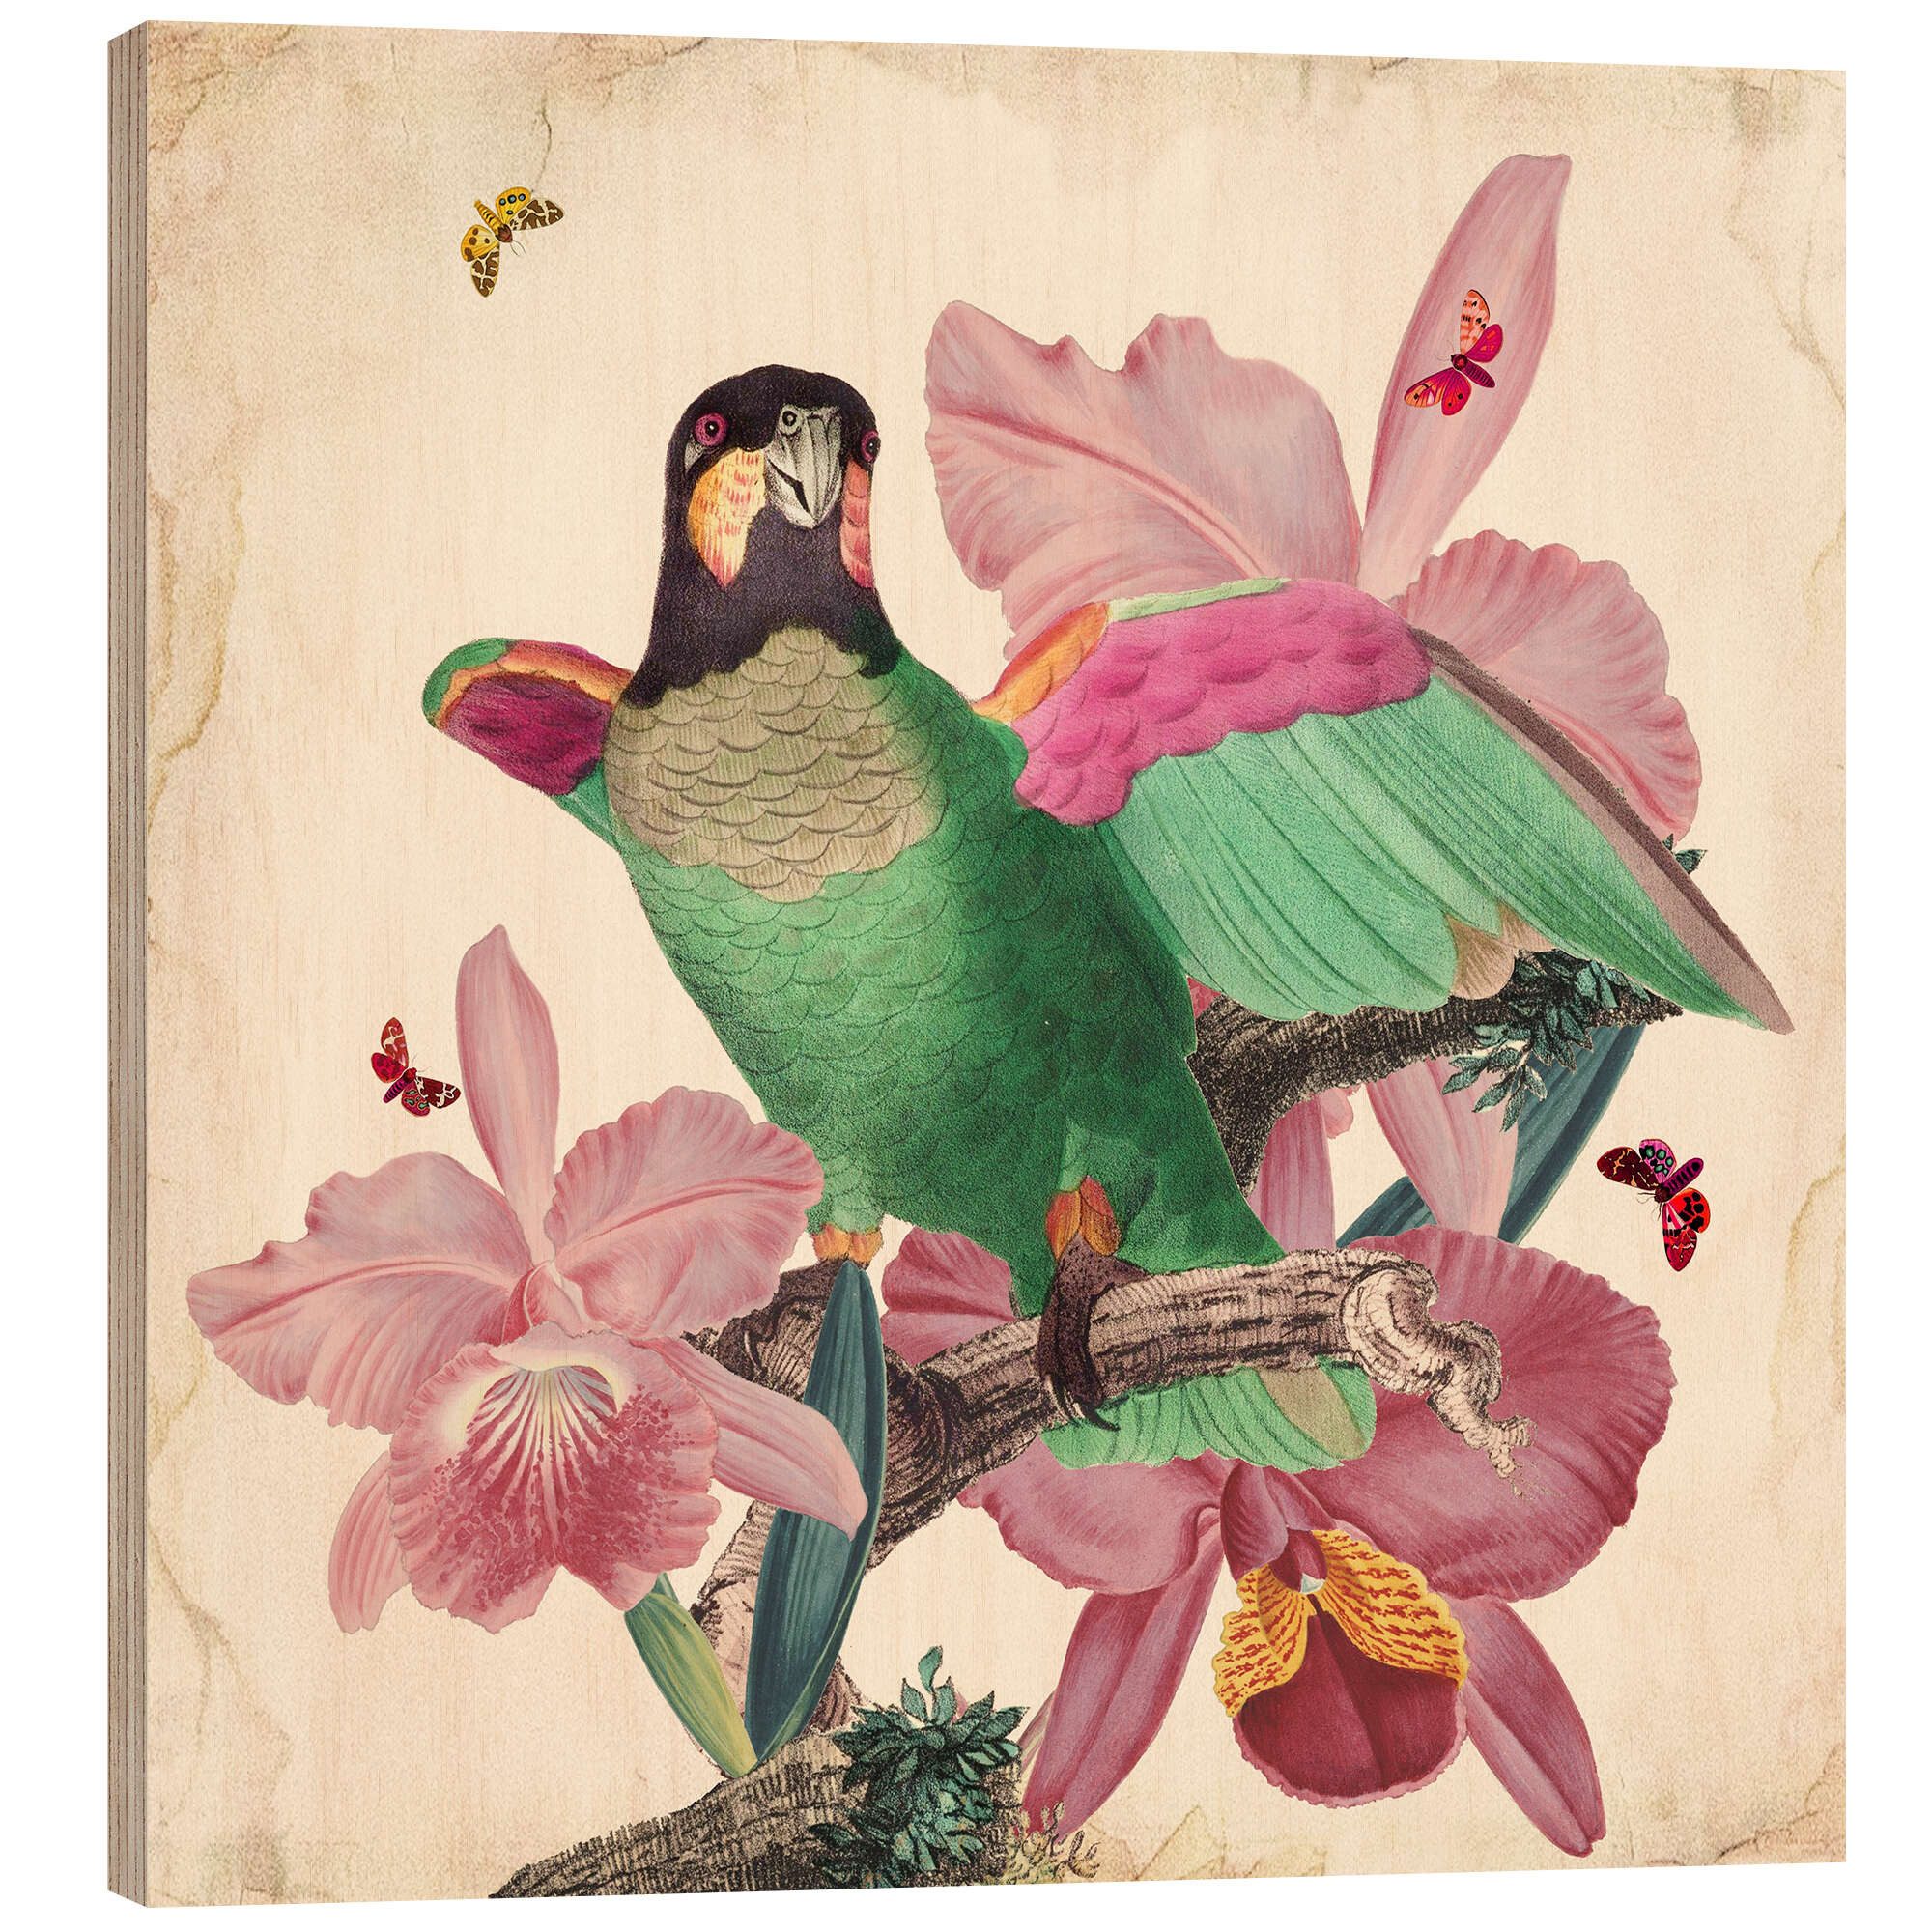 Posterlounge Holzbild Mandy Reinmuth, Exotische Papageien VIII, Wohnzimmer Landhausstil Malerei